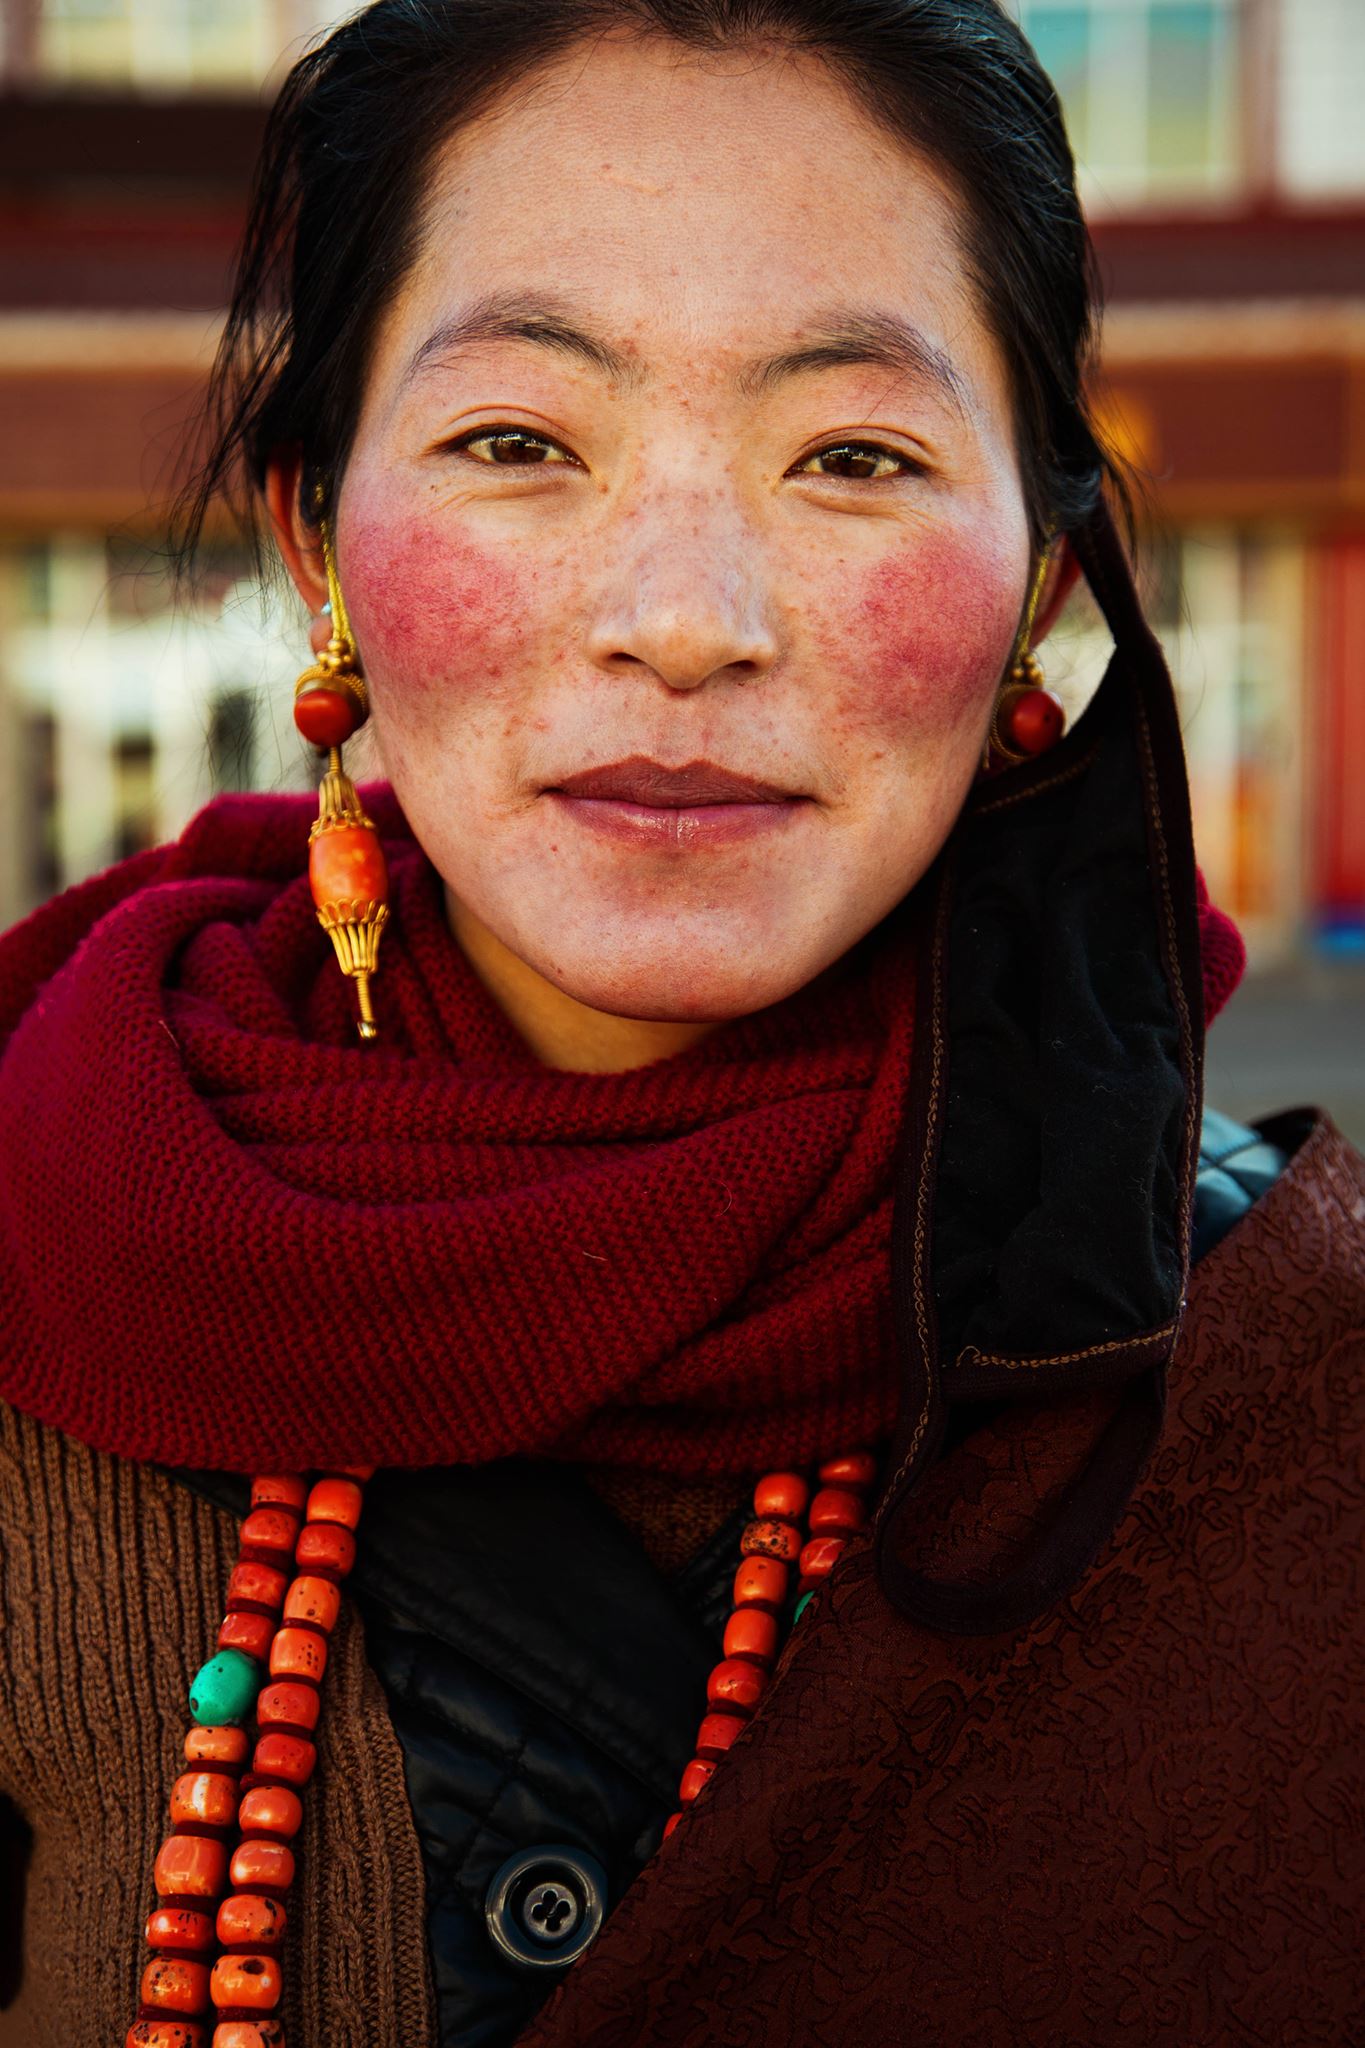 Самые красивая нация женщин. Михаэла норок атлас красоты. Михаэла норок атлас красоты Непал. Атлас красоты Микаэла норок Филиппины. Фотограф Михаэла норок атлас красоты.